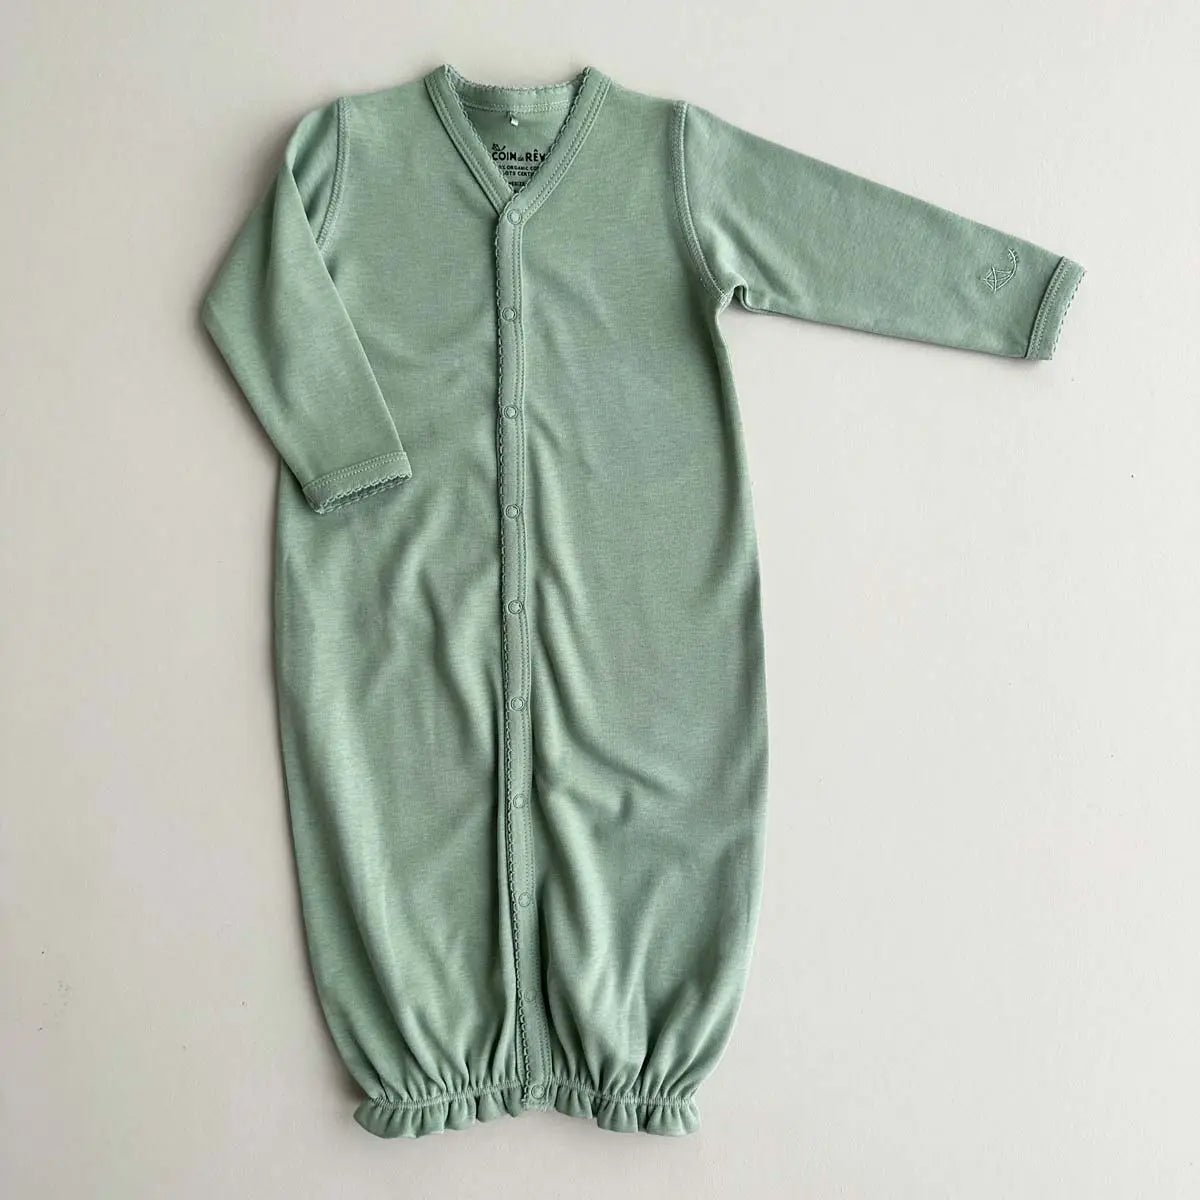 Fuji Sleeping Gown Unicolor